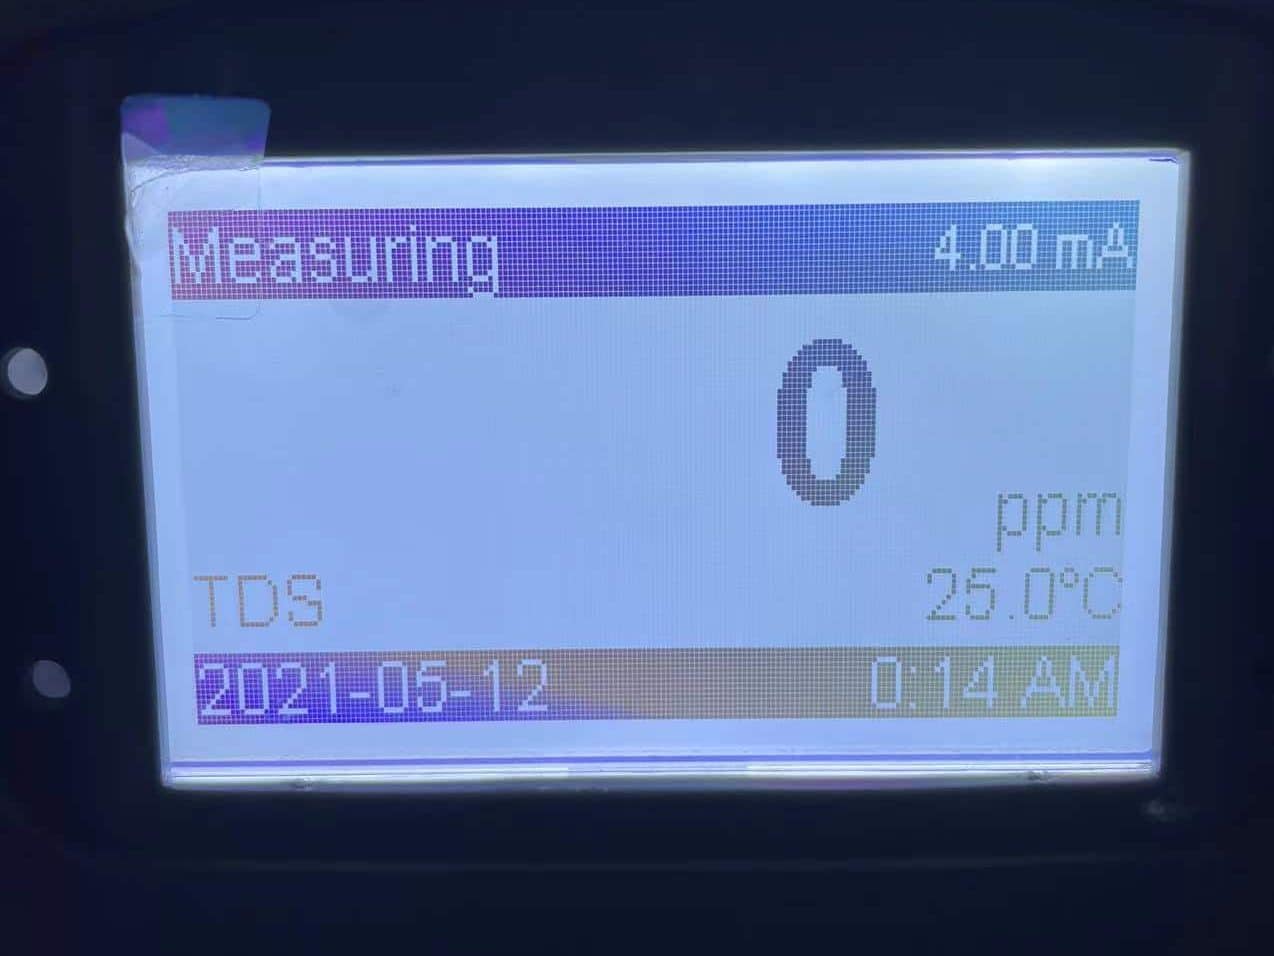 TDS meter reading